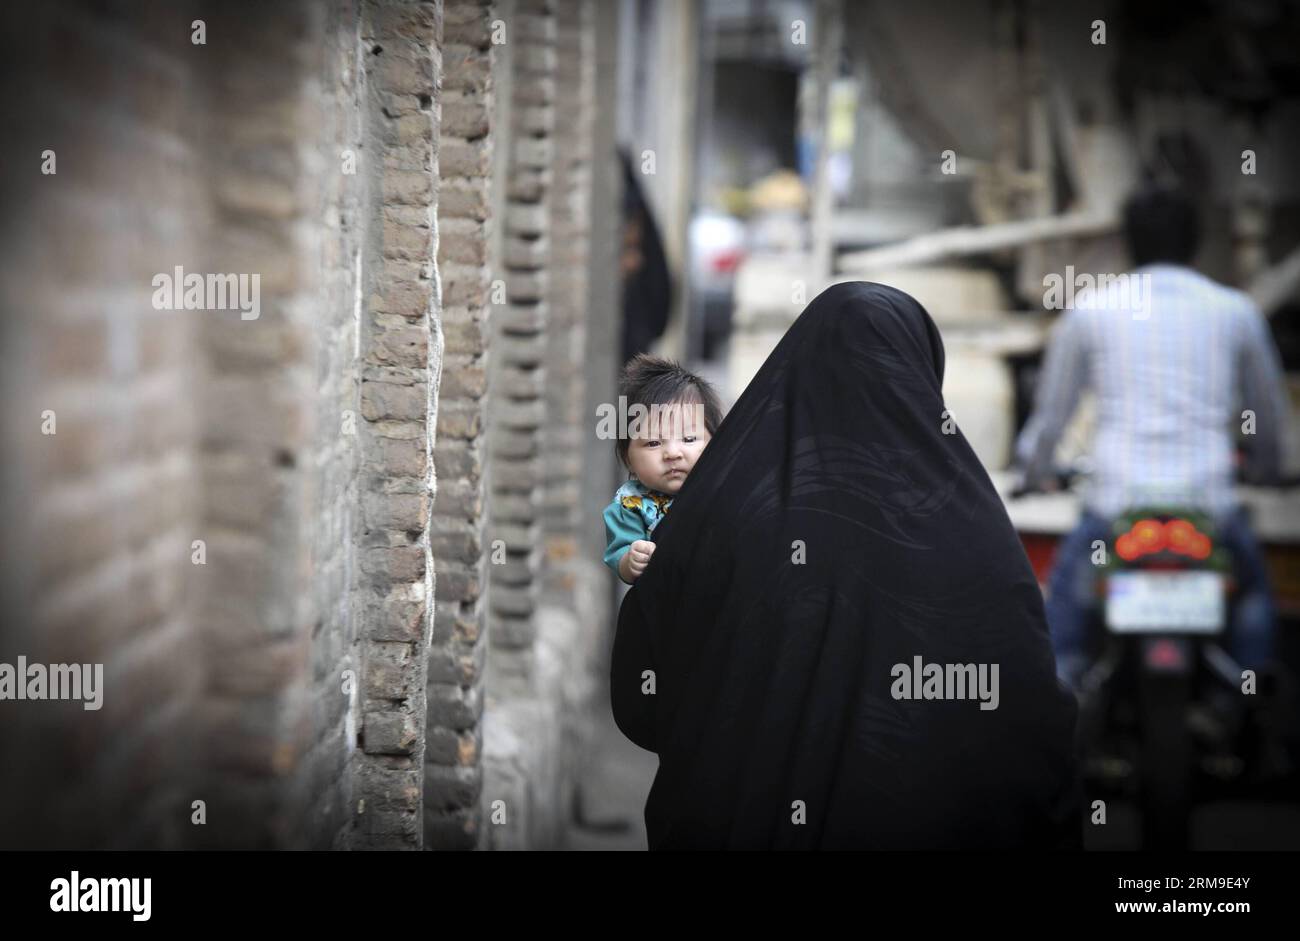 (140520) -- TÉHÉRAN, 20 mai 2014 (Xinhua) -- Une femme vêtue de tchador porte son enfant dans une ruelle à Téhéran, capitale de l'Iran, le 19 mai 2014. Chador est une sorte de hijab formel pour de nombreuses femmes en Iran dans les lieux publics. Le hijab, une couverture des cheveux et du corps pour les femmes, a été rendu public après la révolution islamique en Iran en 1979. (Xinhua/Ahmad Halabisaz)(zhf) IRAN-TEHRAN-WOMEN-HIJAB PUBLICATIONxNOTxINxCHN TÉHÉRAN Mai 20 2014 XINHUA une femme vêtue de chador porte son enfant SUR une allée à TÉHÉRAN capitale de l'Iran Mai 19 2014 chador EST un enfant du hijab formel pour BEAUCOUP DE femmes en Iran en public PL Banque D'Images